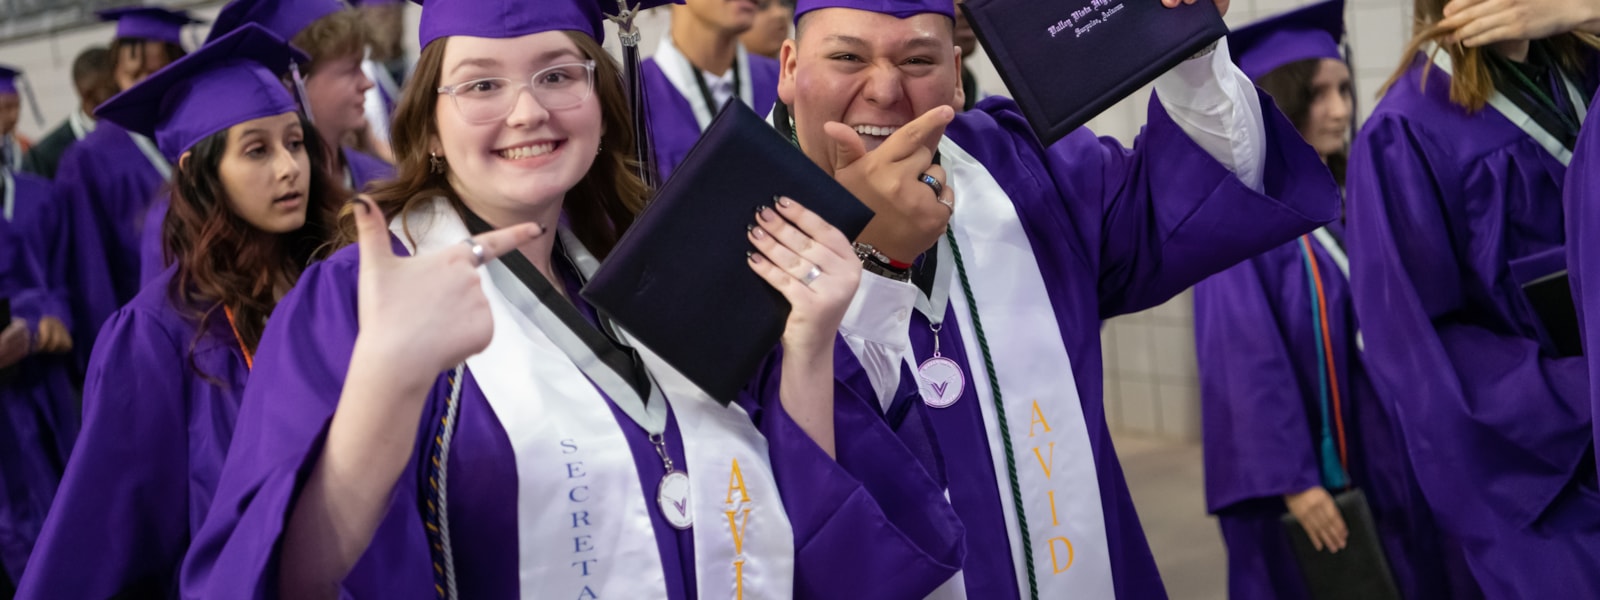 Valley Vista Graduates smiling at graduation